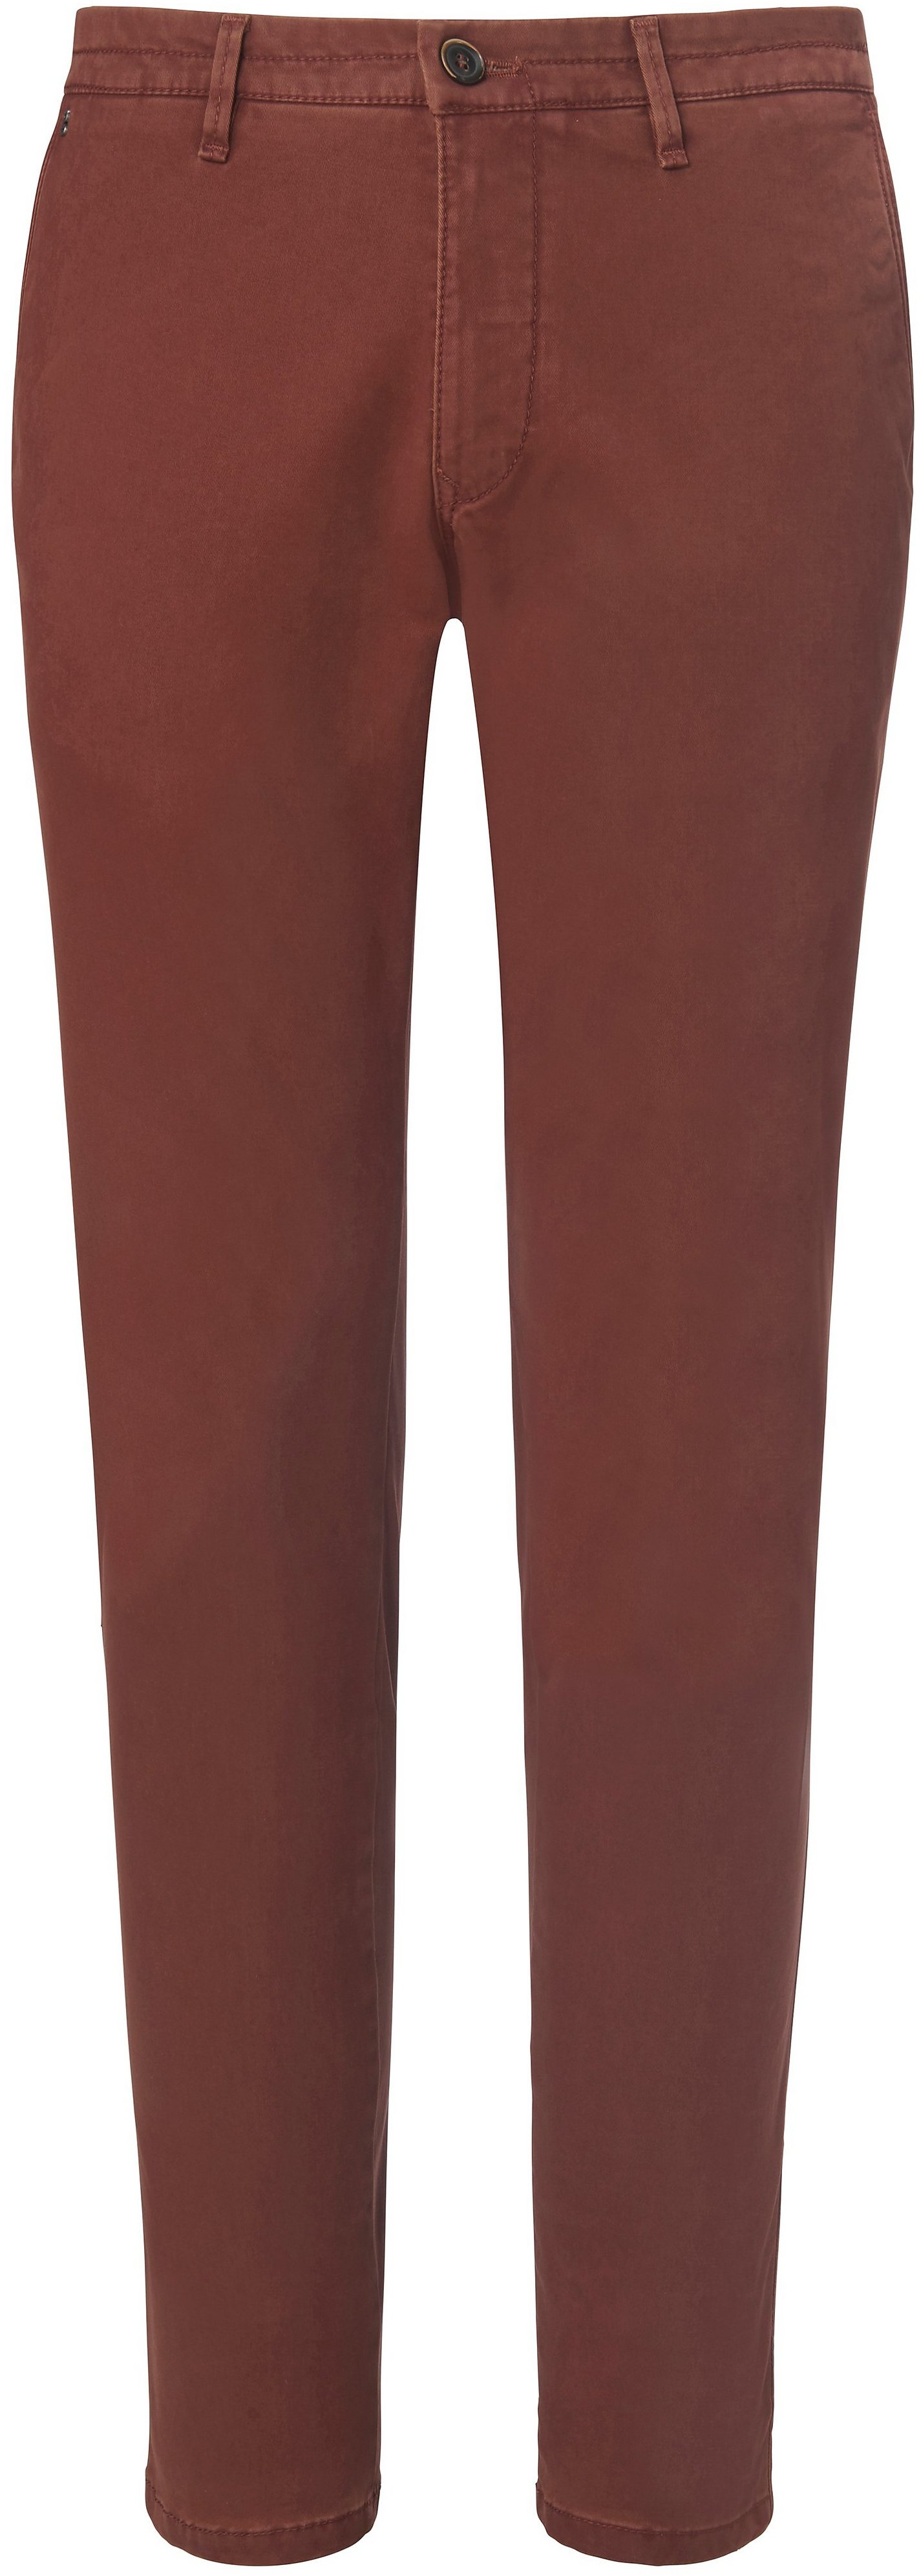 Le pantalon coupe Slim Fit modèle Sterling  gardeur marron